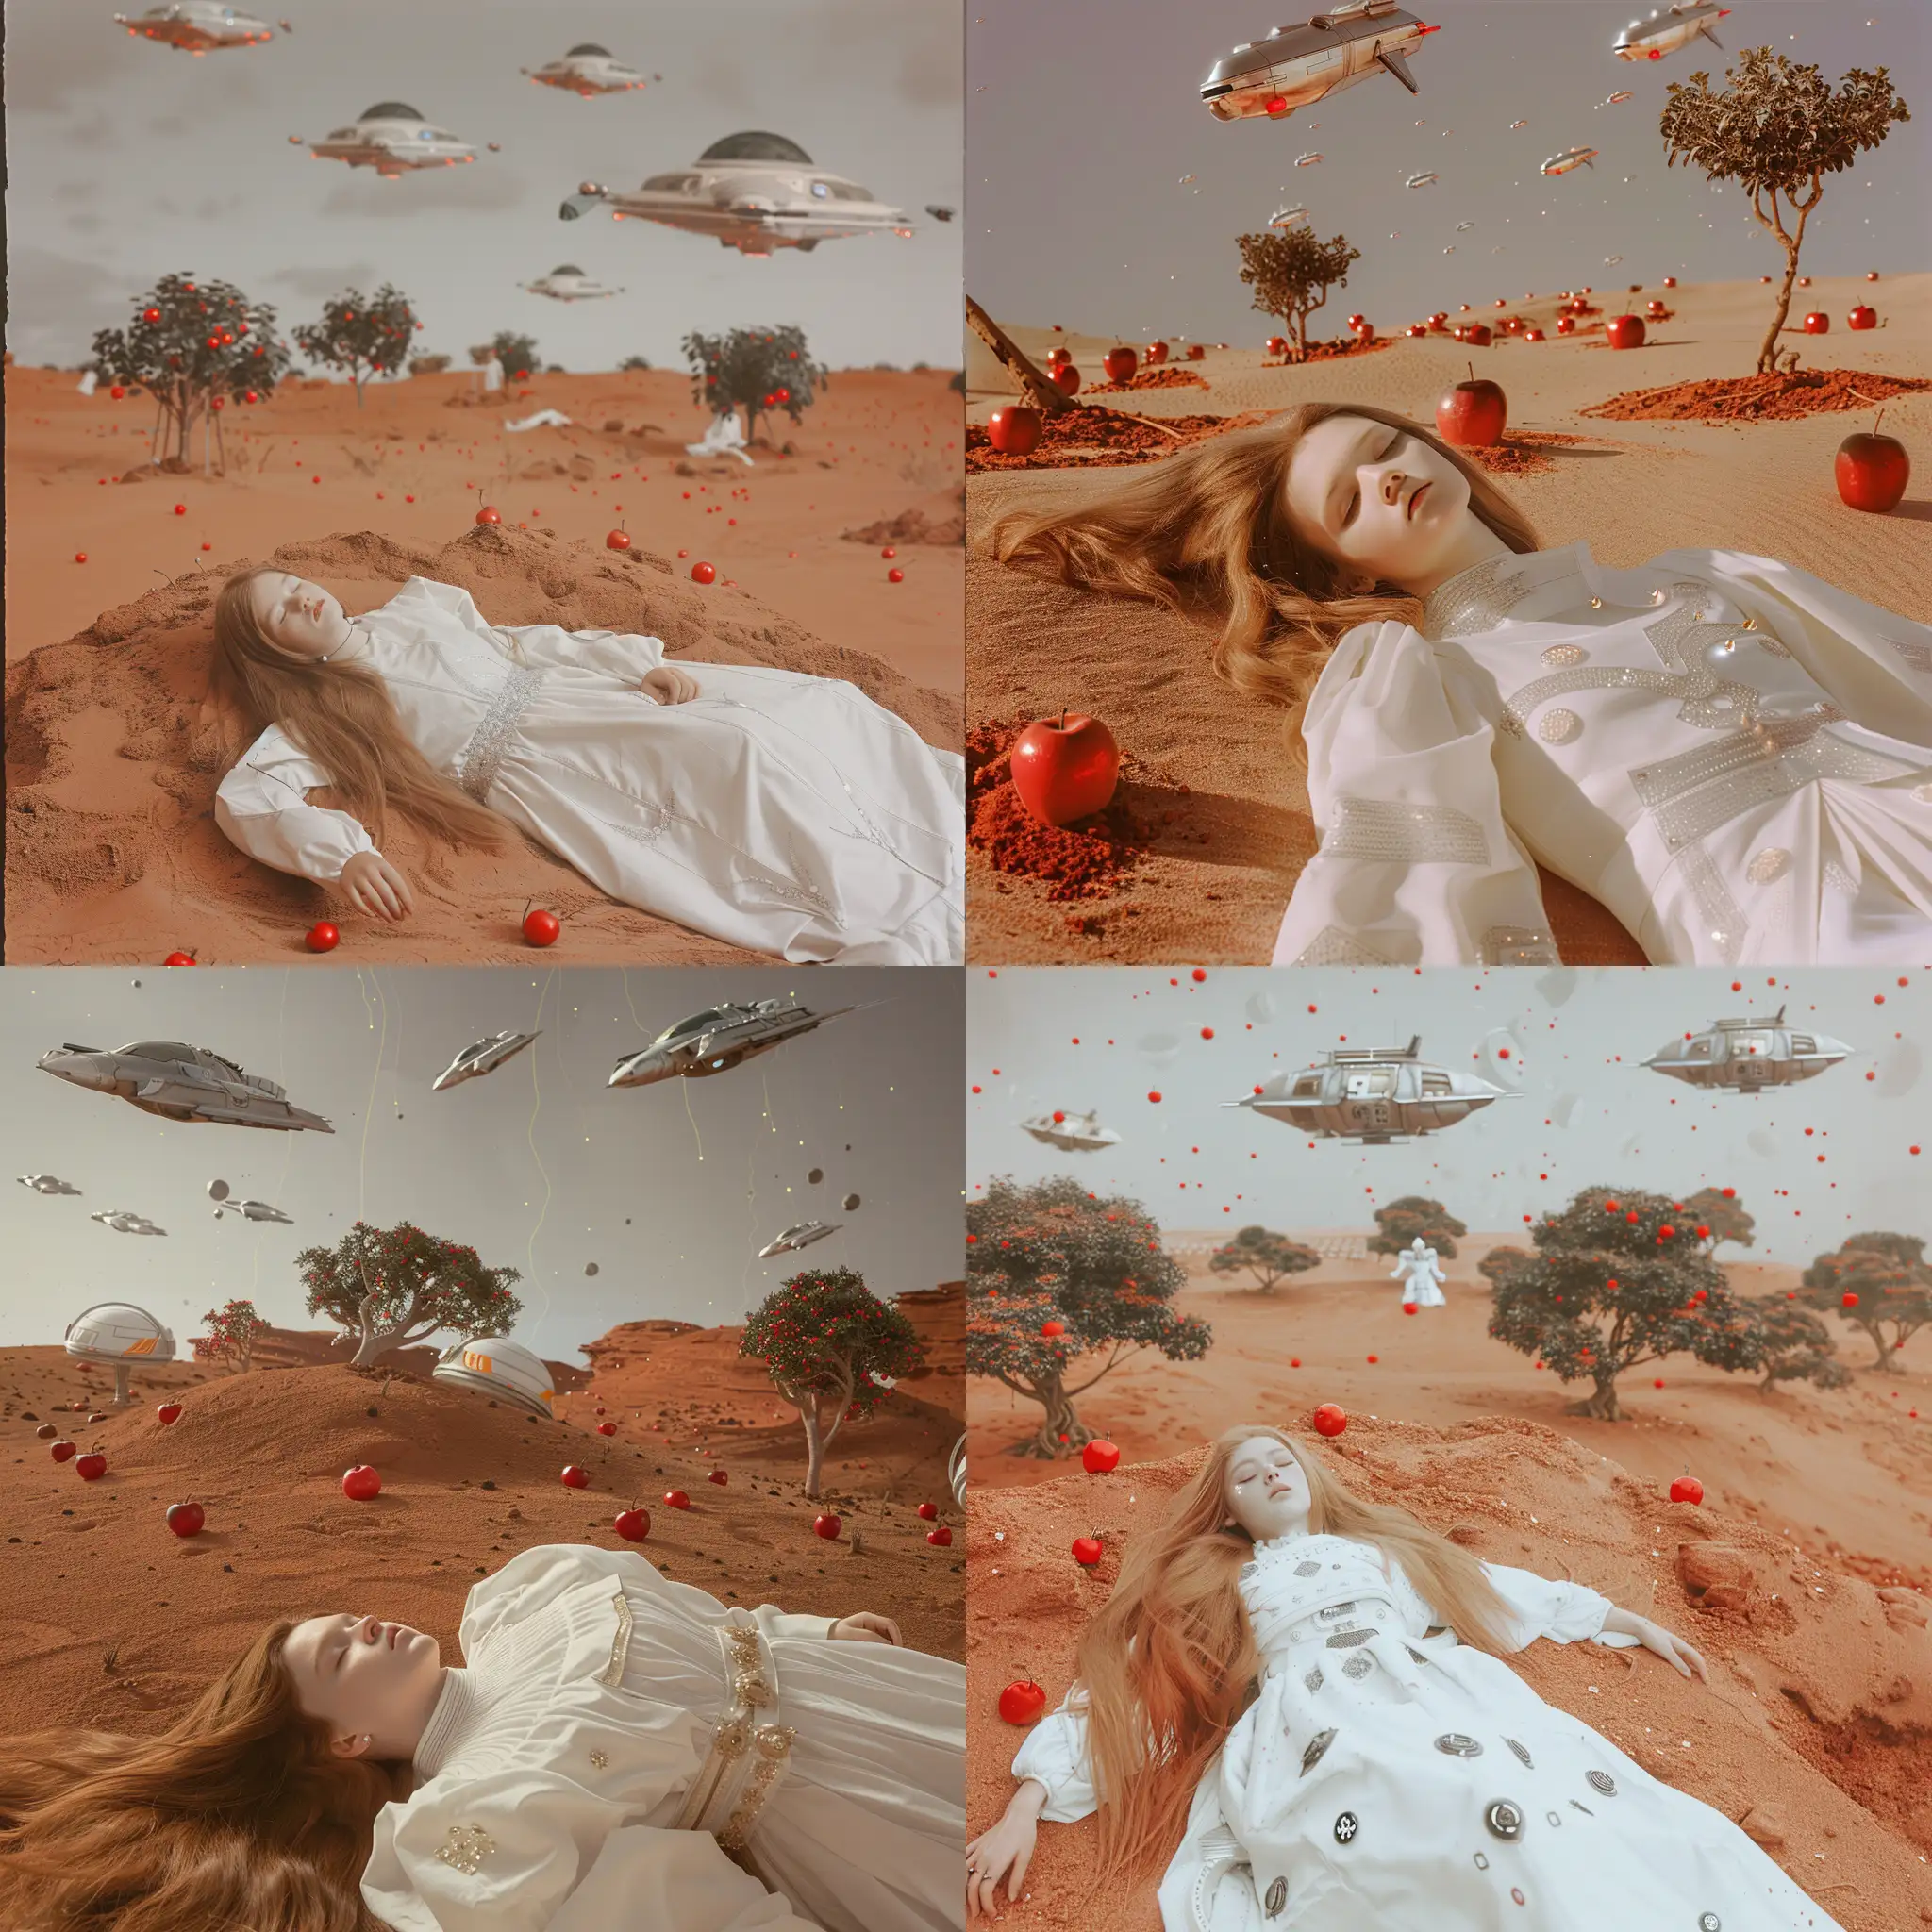 Фантастическая планета в стилистике фильма Дюна, девушка лежит  в белом костюме,  длинные каштановые волосы, красная песчаная земля,  на горизонте небольшие деревья с красными яблоками, на сером небе проплывают космические корабли, 8k, плёночная фотография, ультодетализация, рассеяние света, резкий фокус, высокая детализация 